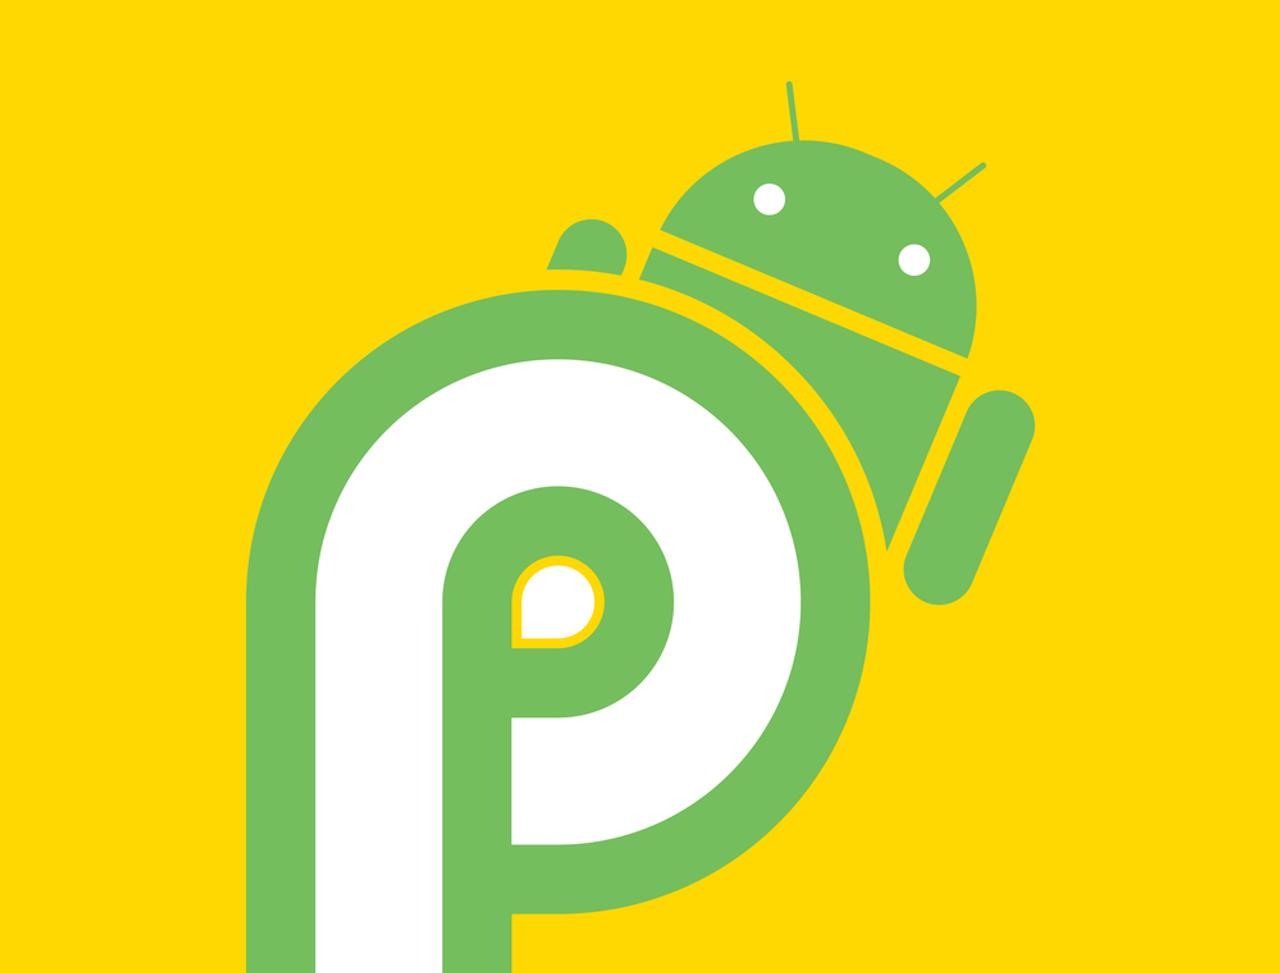 Android Pの｢P｣は、ピスタチオの｢P｣らしい